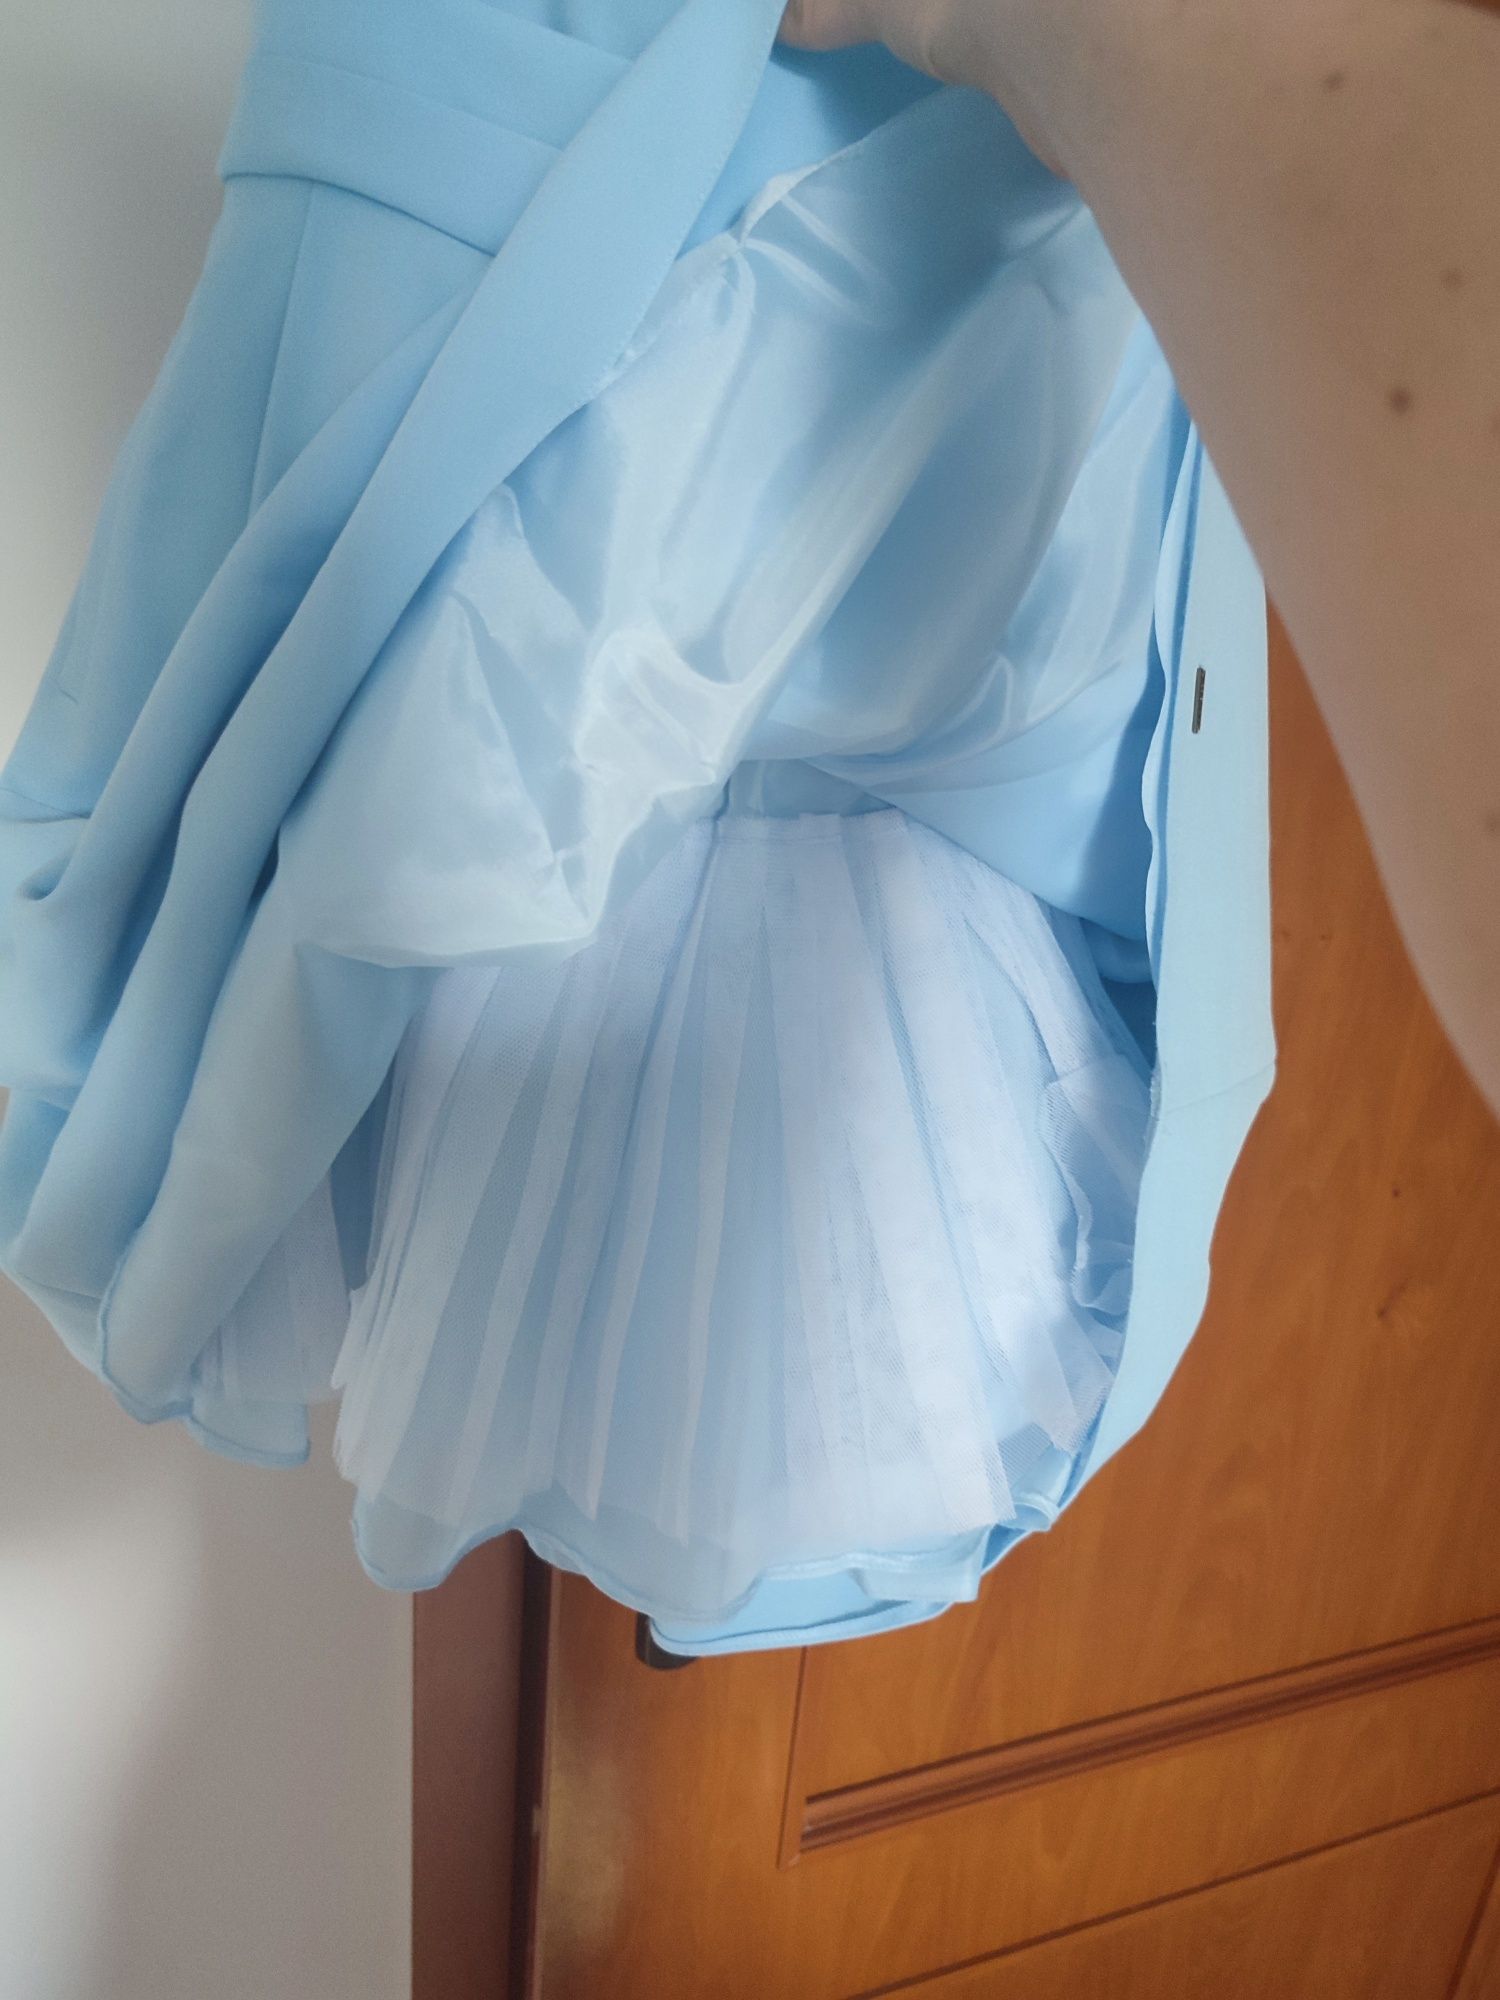 Niebieska krótka sukienka XS chrzciny komunia